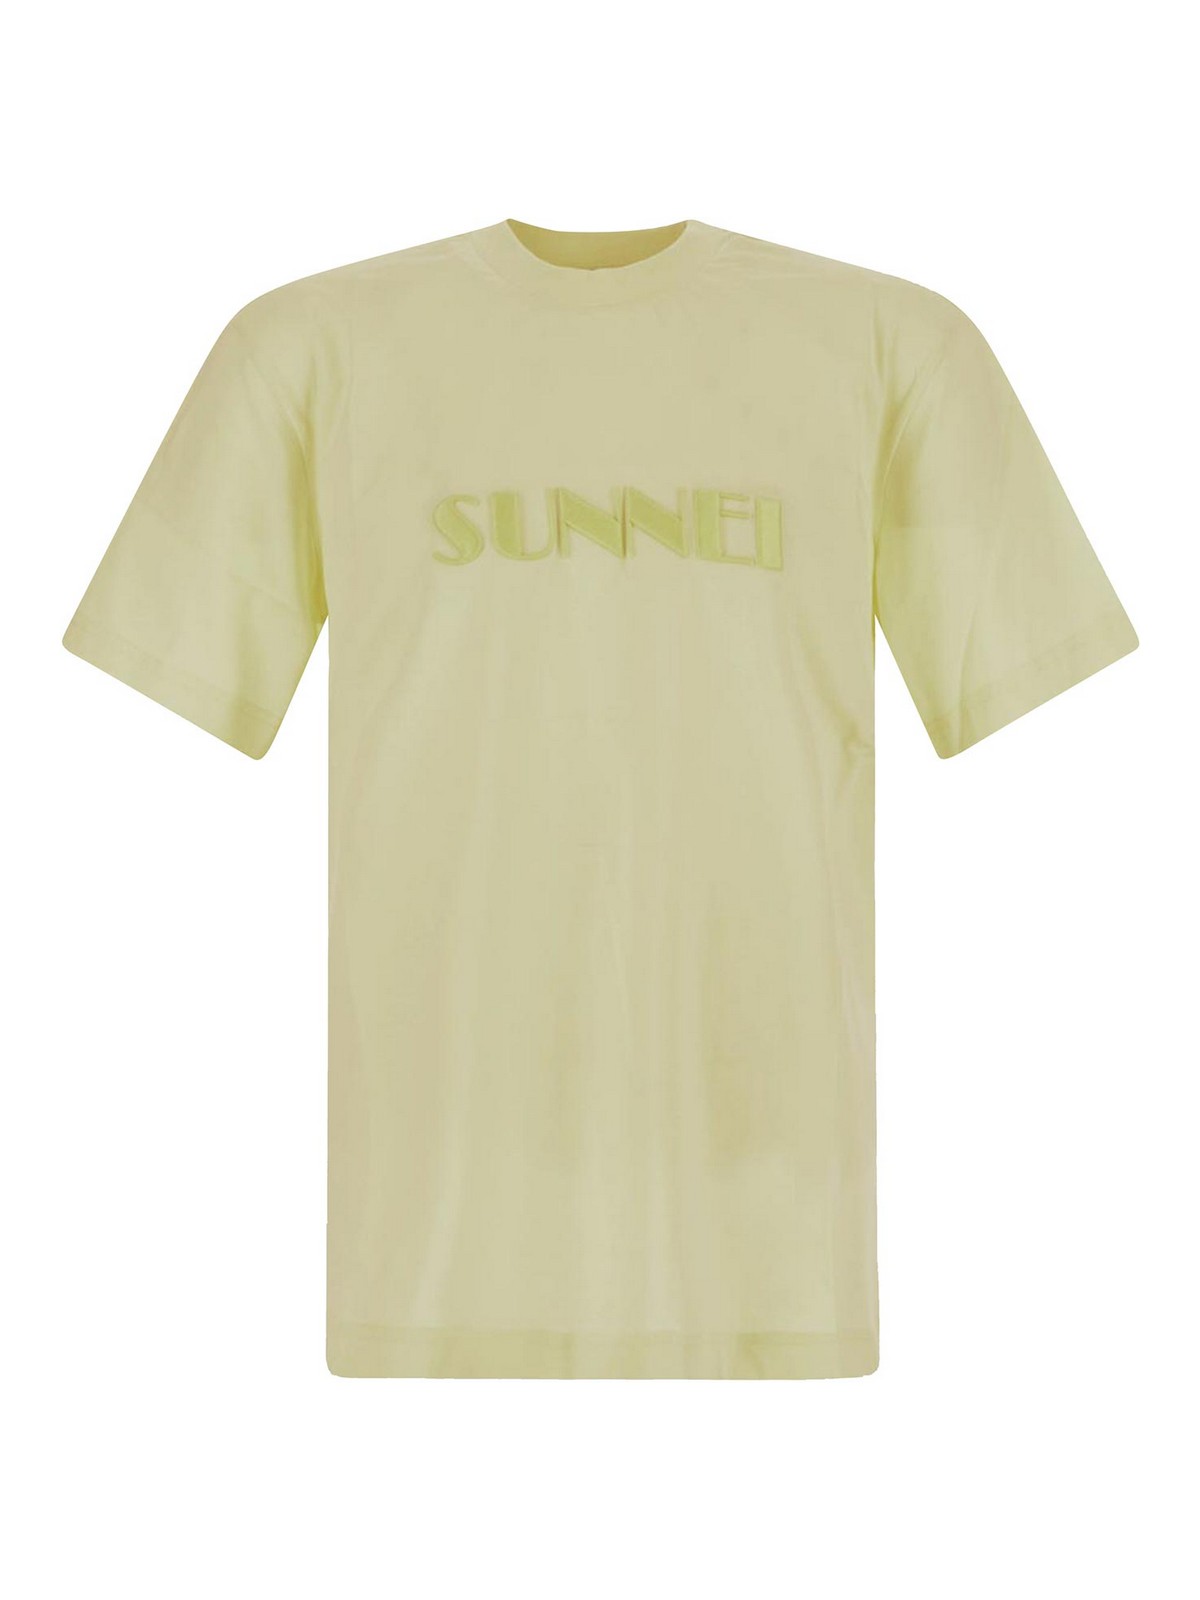 Sunnei T-shirt S In Yellow